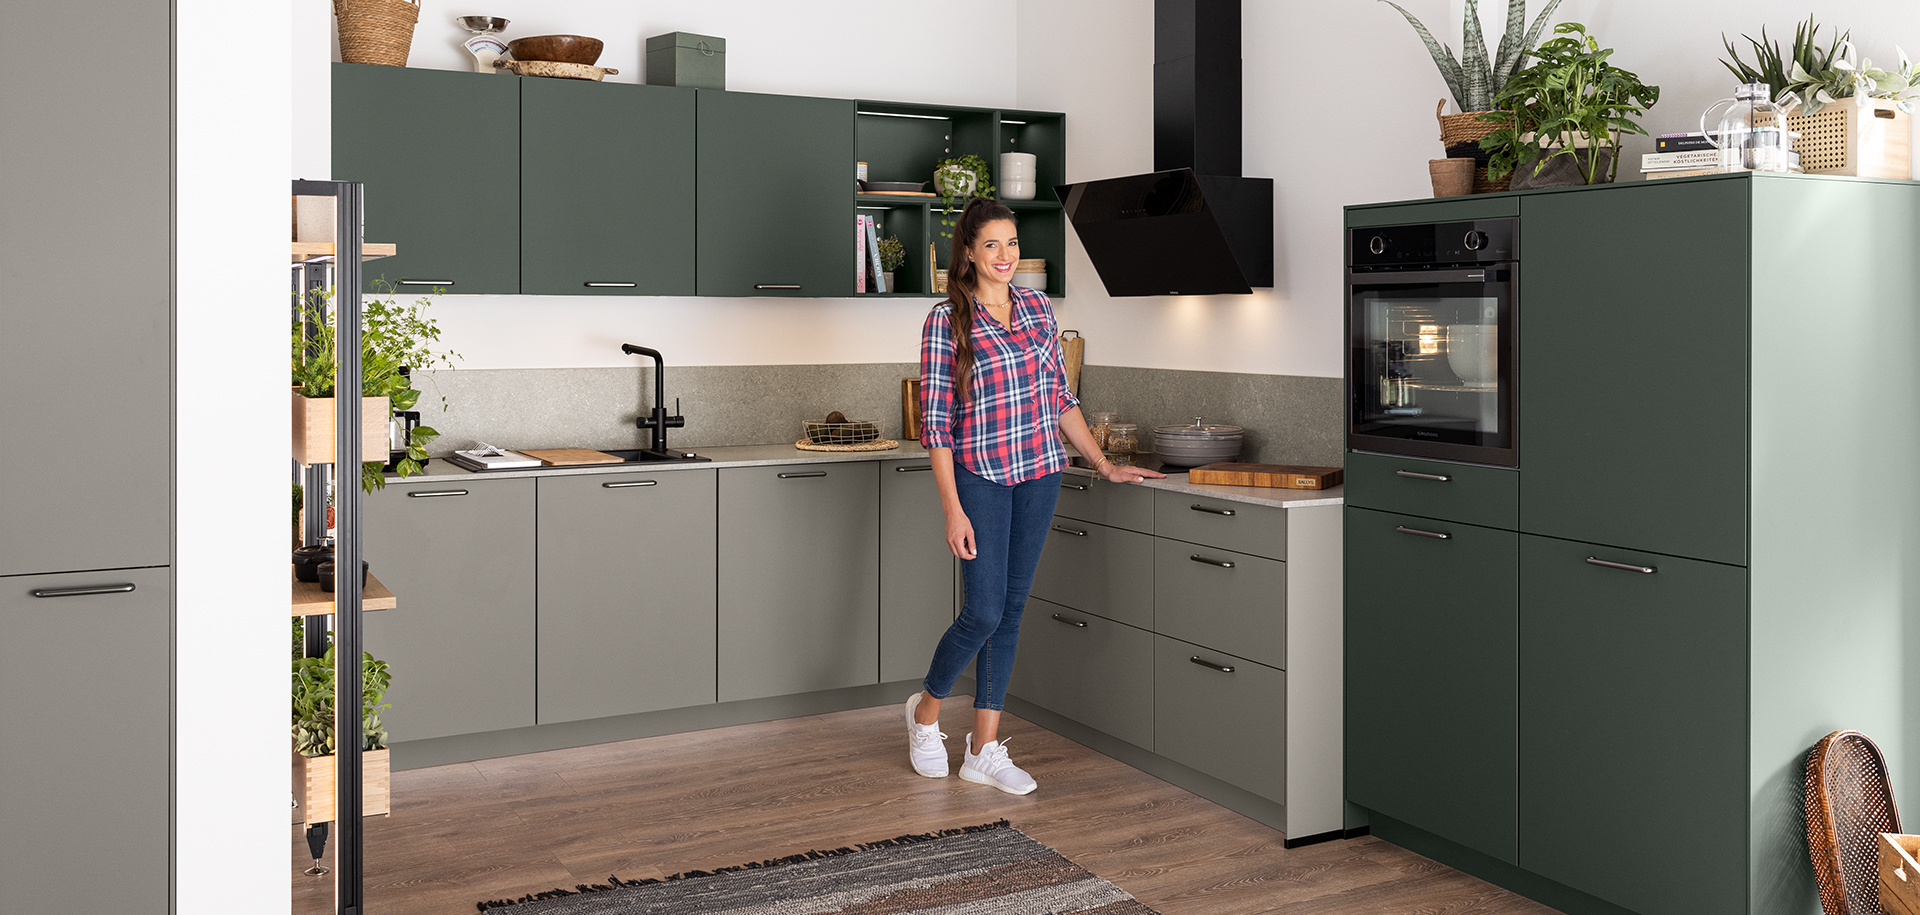 Donna in piedi in una cucina moderna con armadi verdi, elettrodomestici in acciaio inossidabile e dettagli in legno, con un gesto di benvenuto.